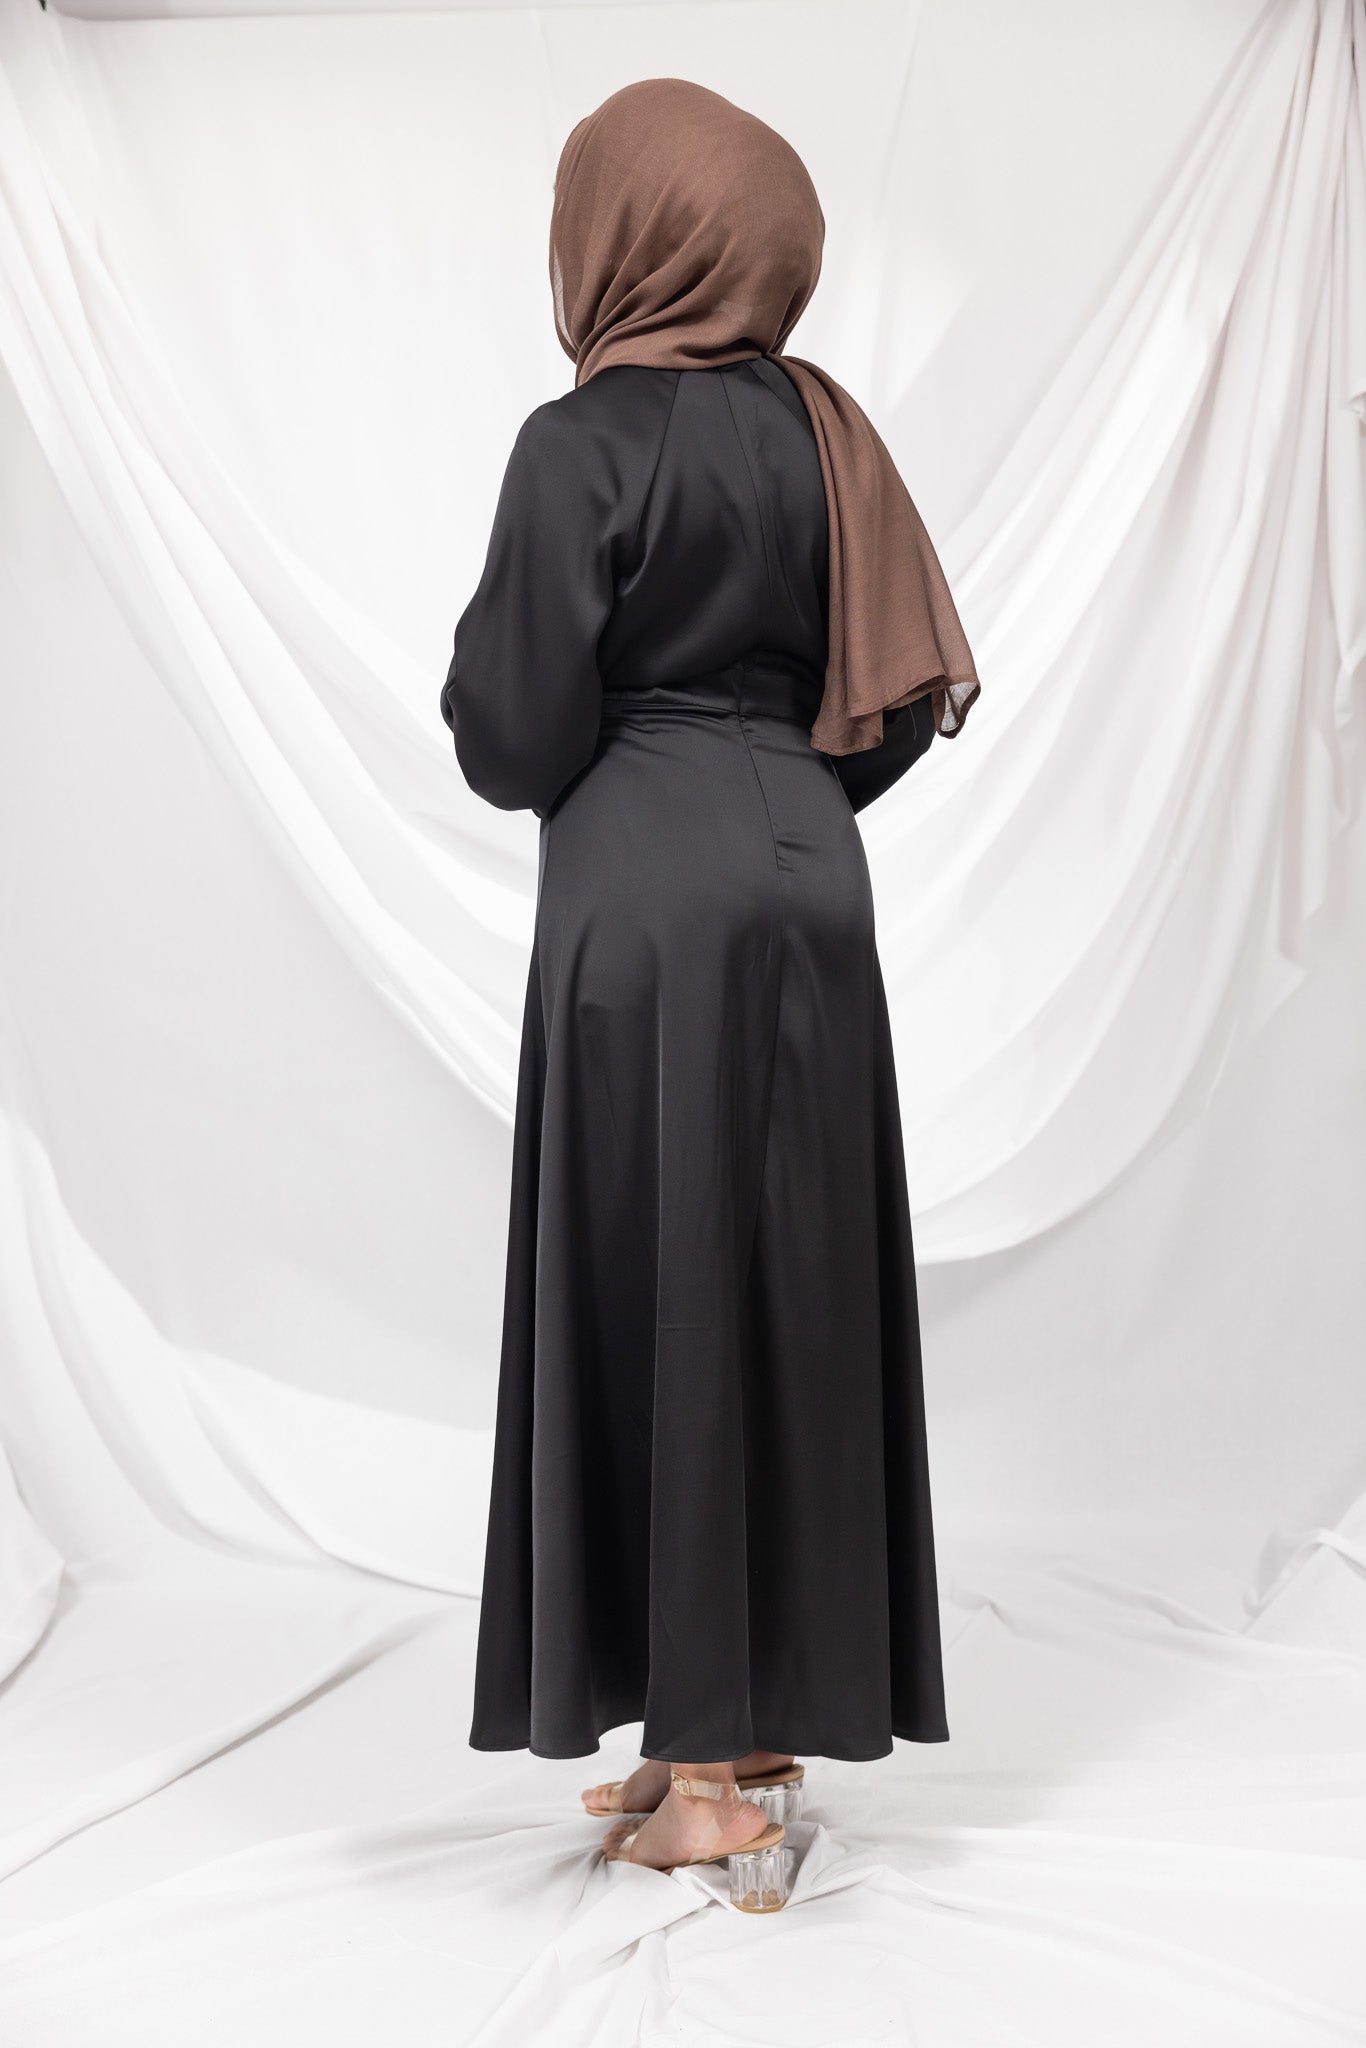 m8025Black-dress-abaya